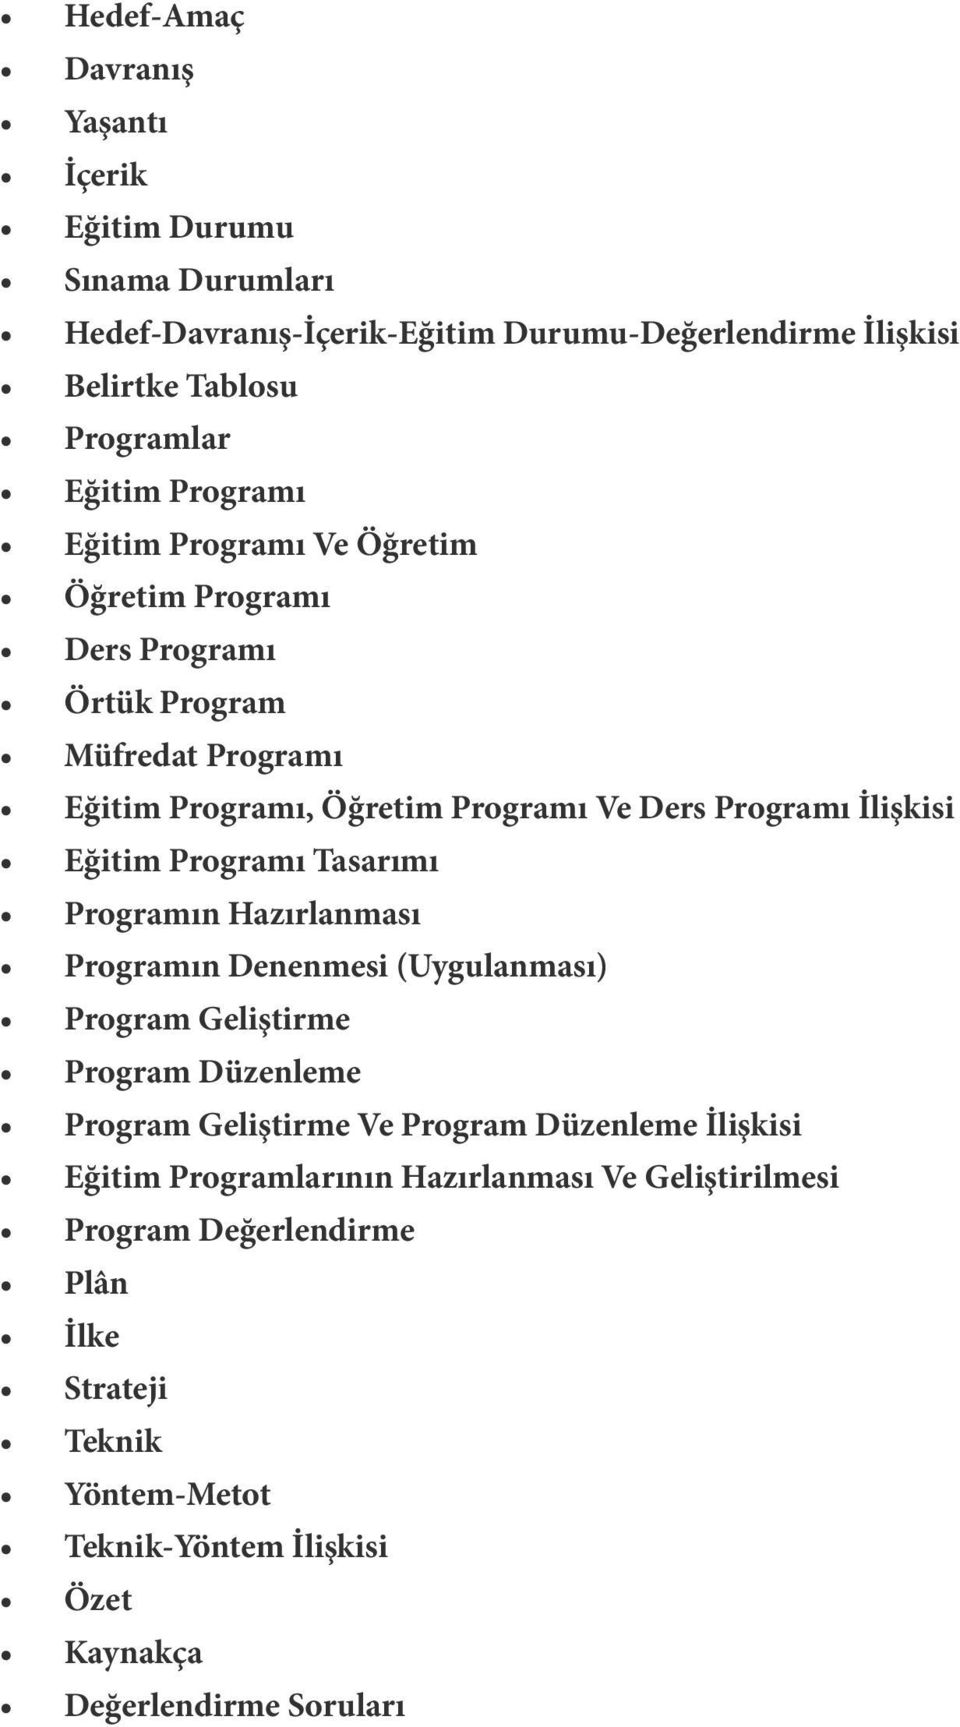 Eğitim Programı Tasarımı Programın Hazırlanması Programın Denenmesi (Uygulanması) Program Geliştirme Program Düzenleme Program Geliştirme Ve Program Düzenleme